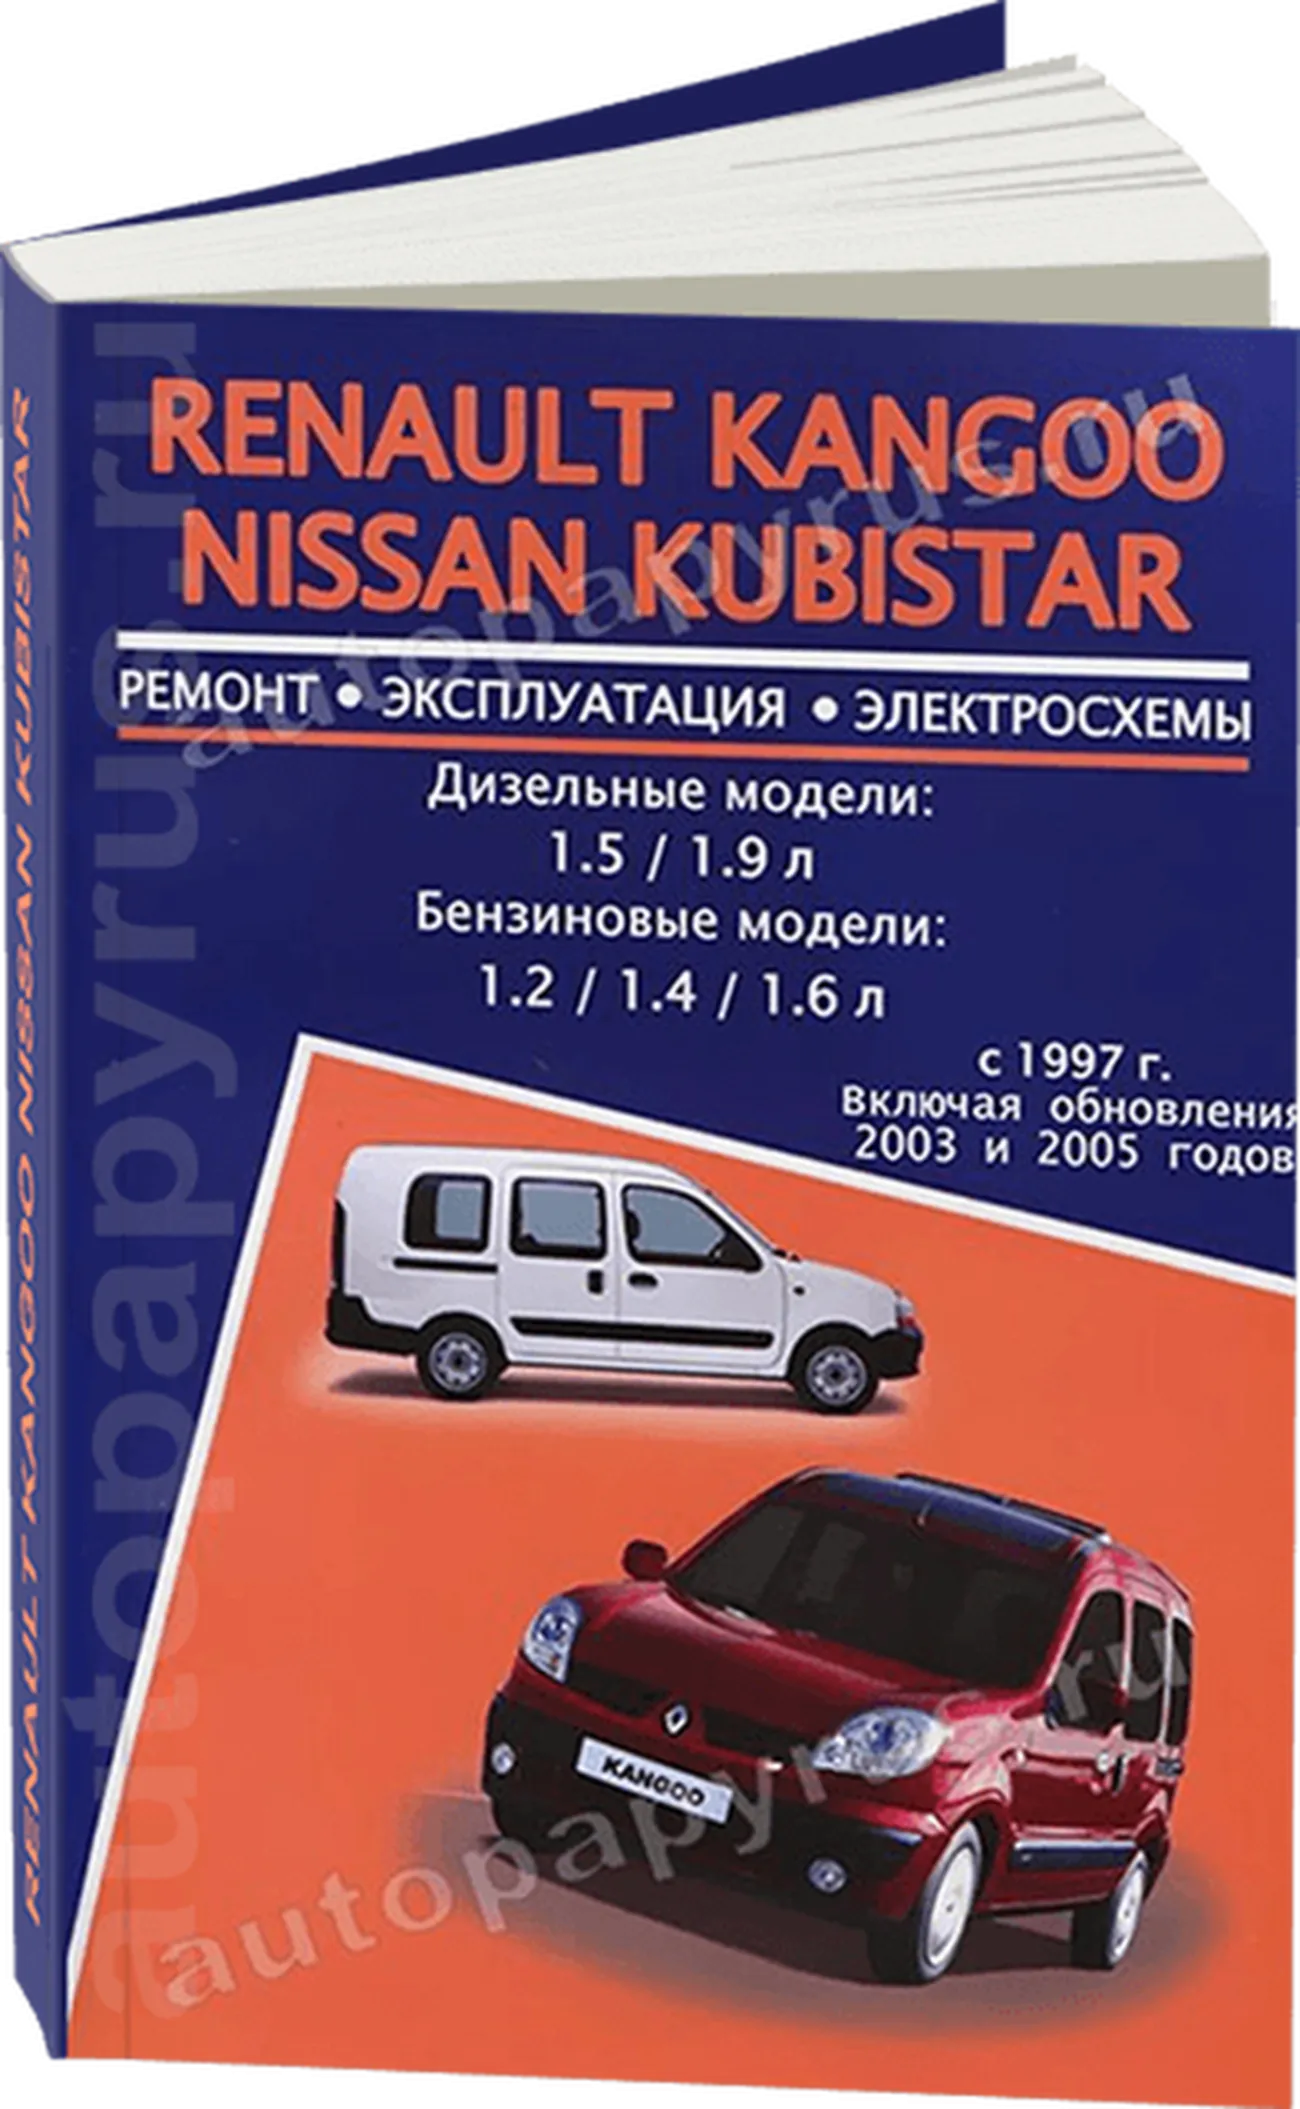 Книга: RENAULT KANGOO / NISSAN KUBISTAR (б , д) с 1997 г.в., + обновл. 2003 / 2005 г.в., рем., экспл., то | Авторесурс